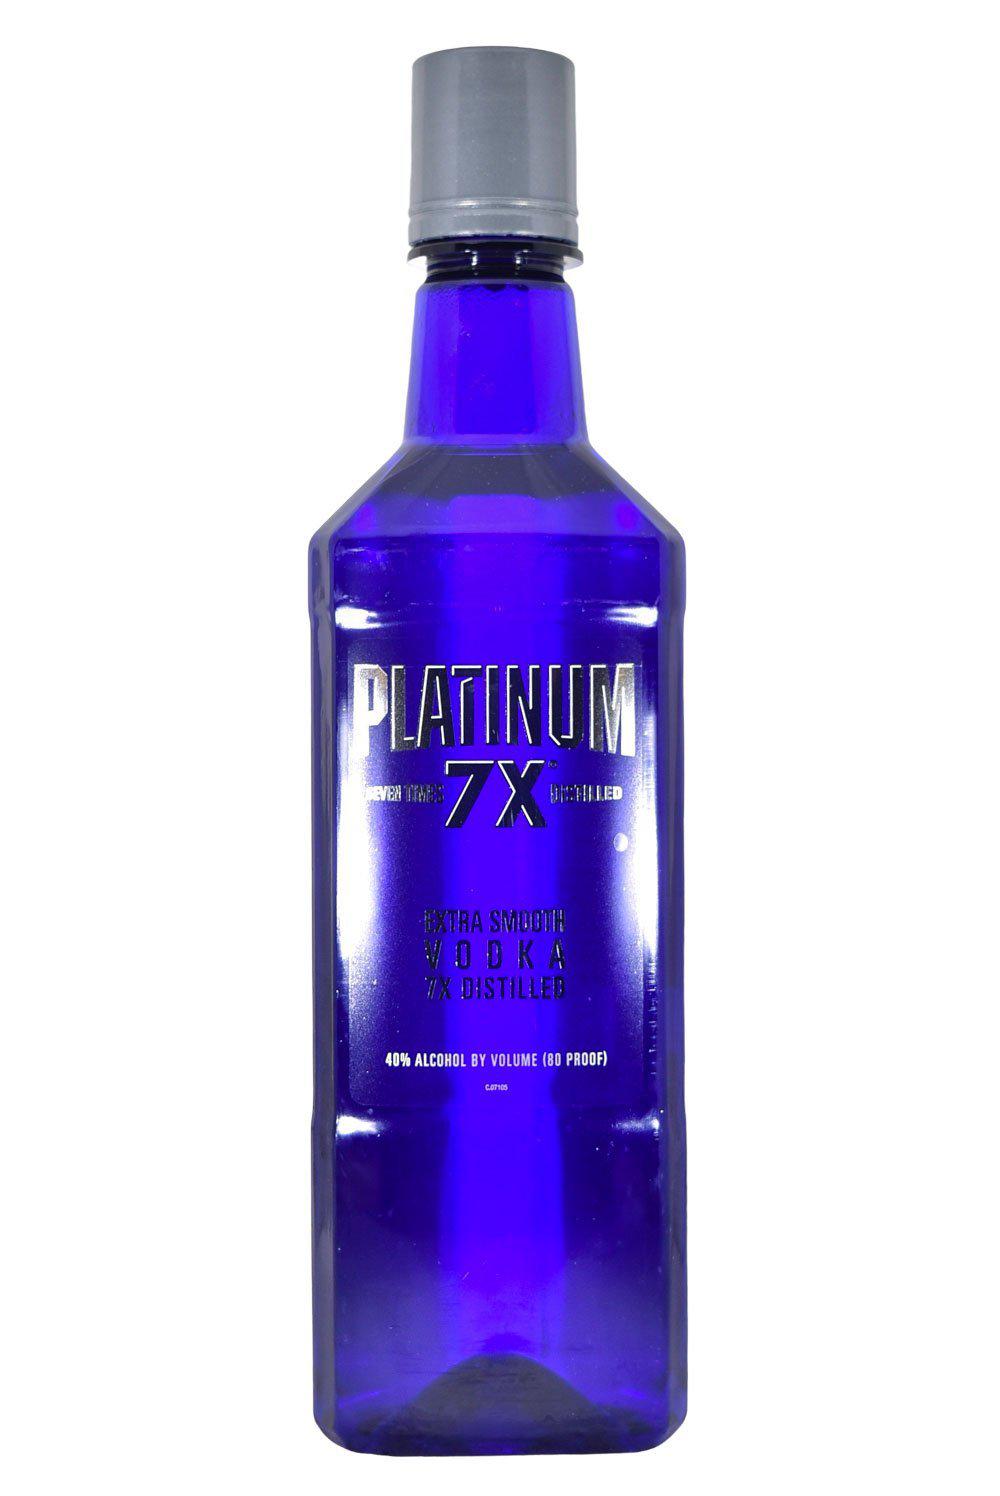 Platinum 7x Seven Times Distilled Vodka – Flatiron SF